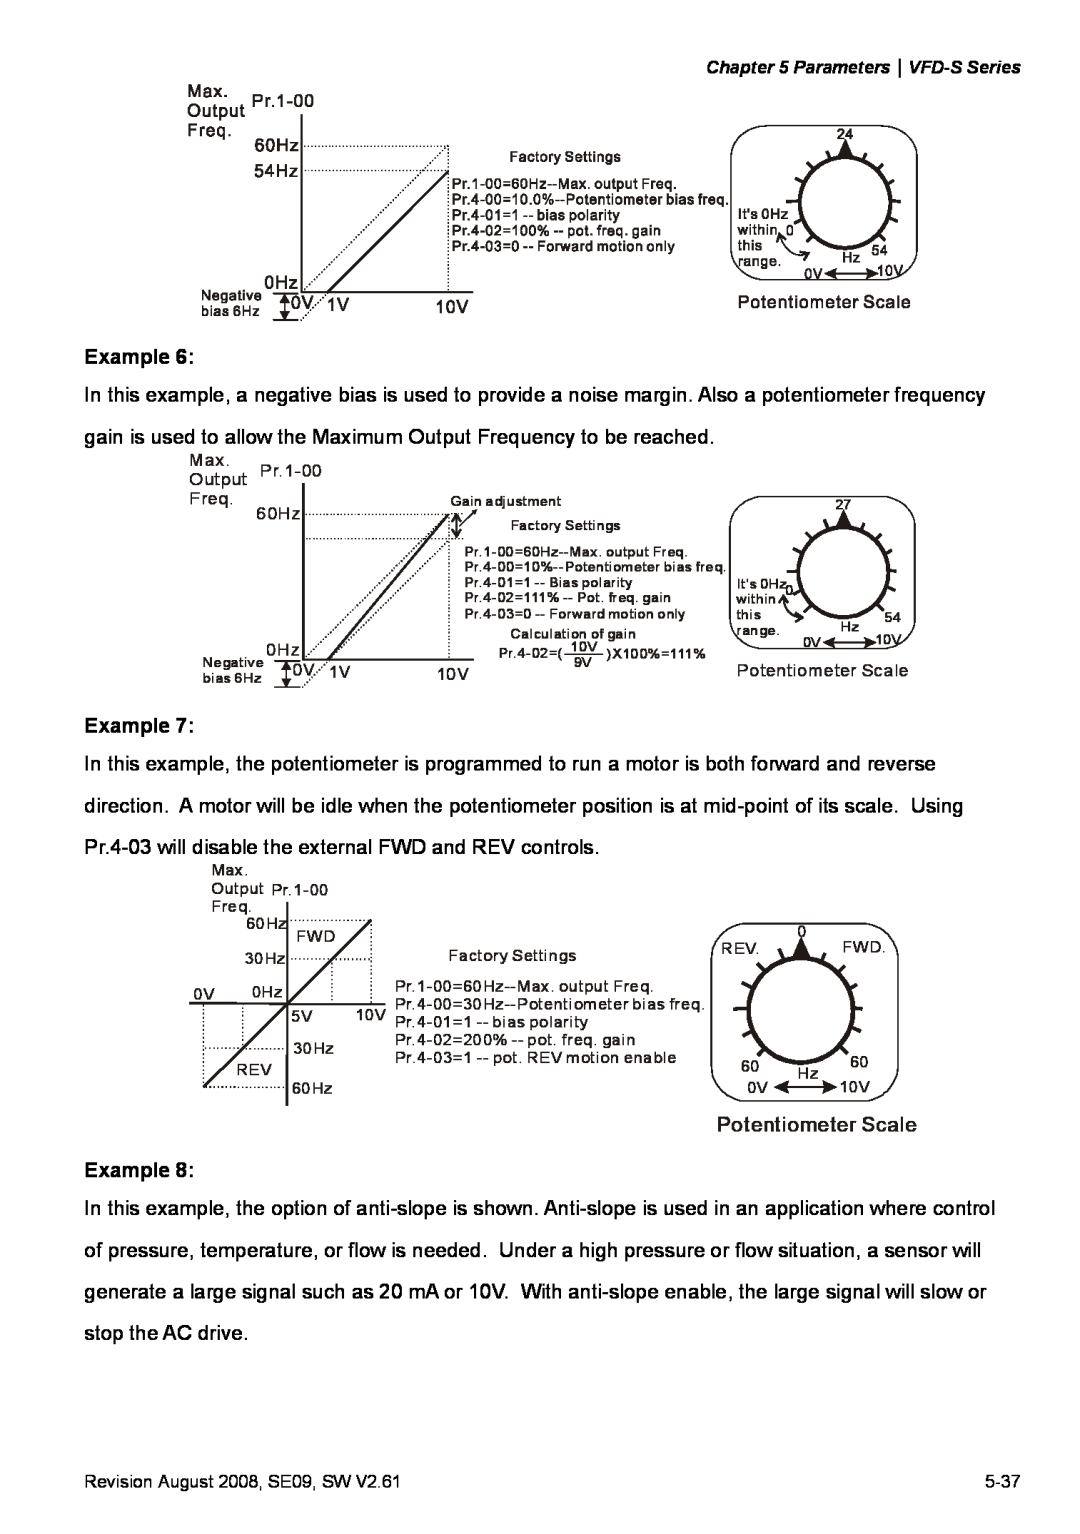 Delta Electronics VFD-S manual Potentiometer Scale, Max Output Pr.1-00 Freq 60Hz, 0 Hz 